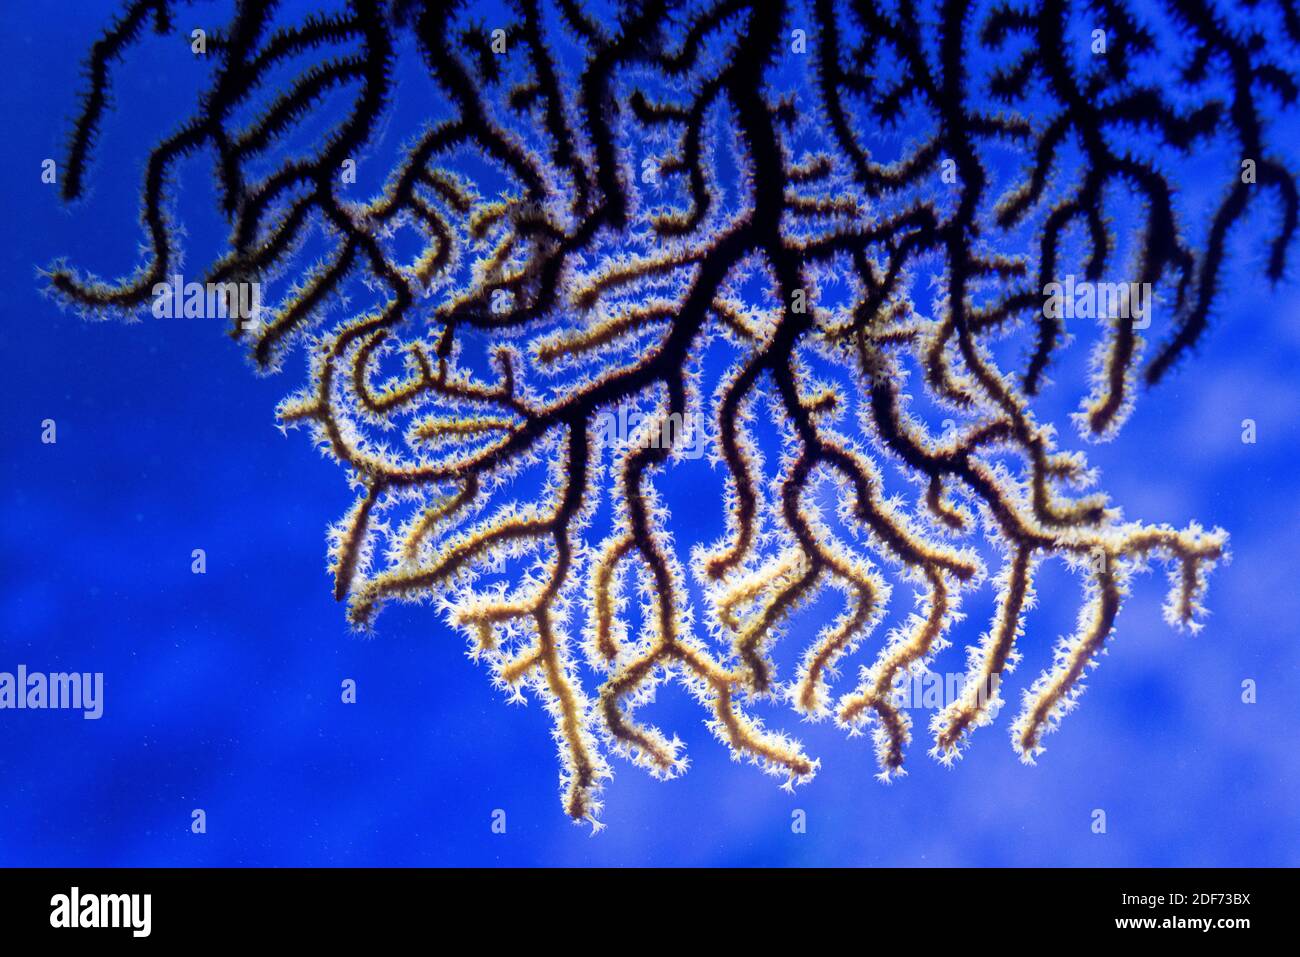 Le fouet de mer (Paramuricea clavata) est un corail branché. Banque D'Images